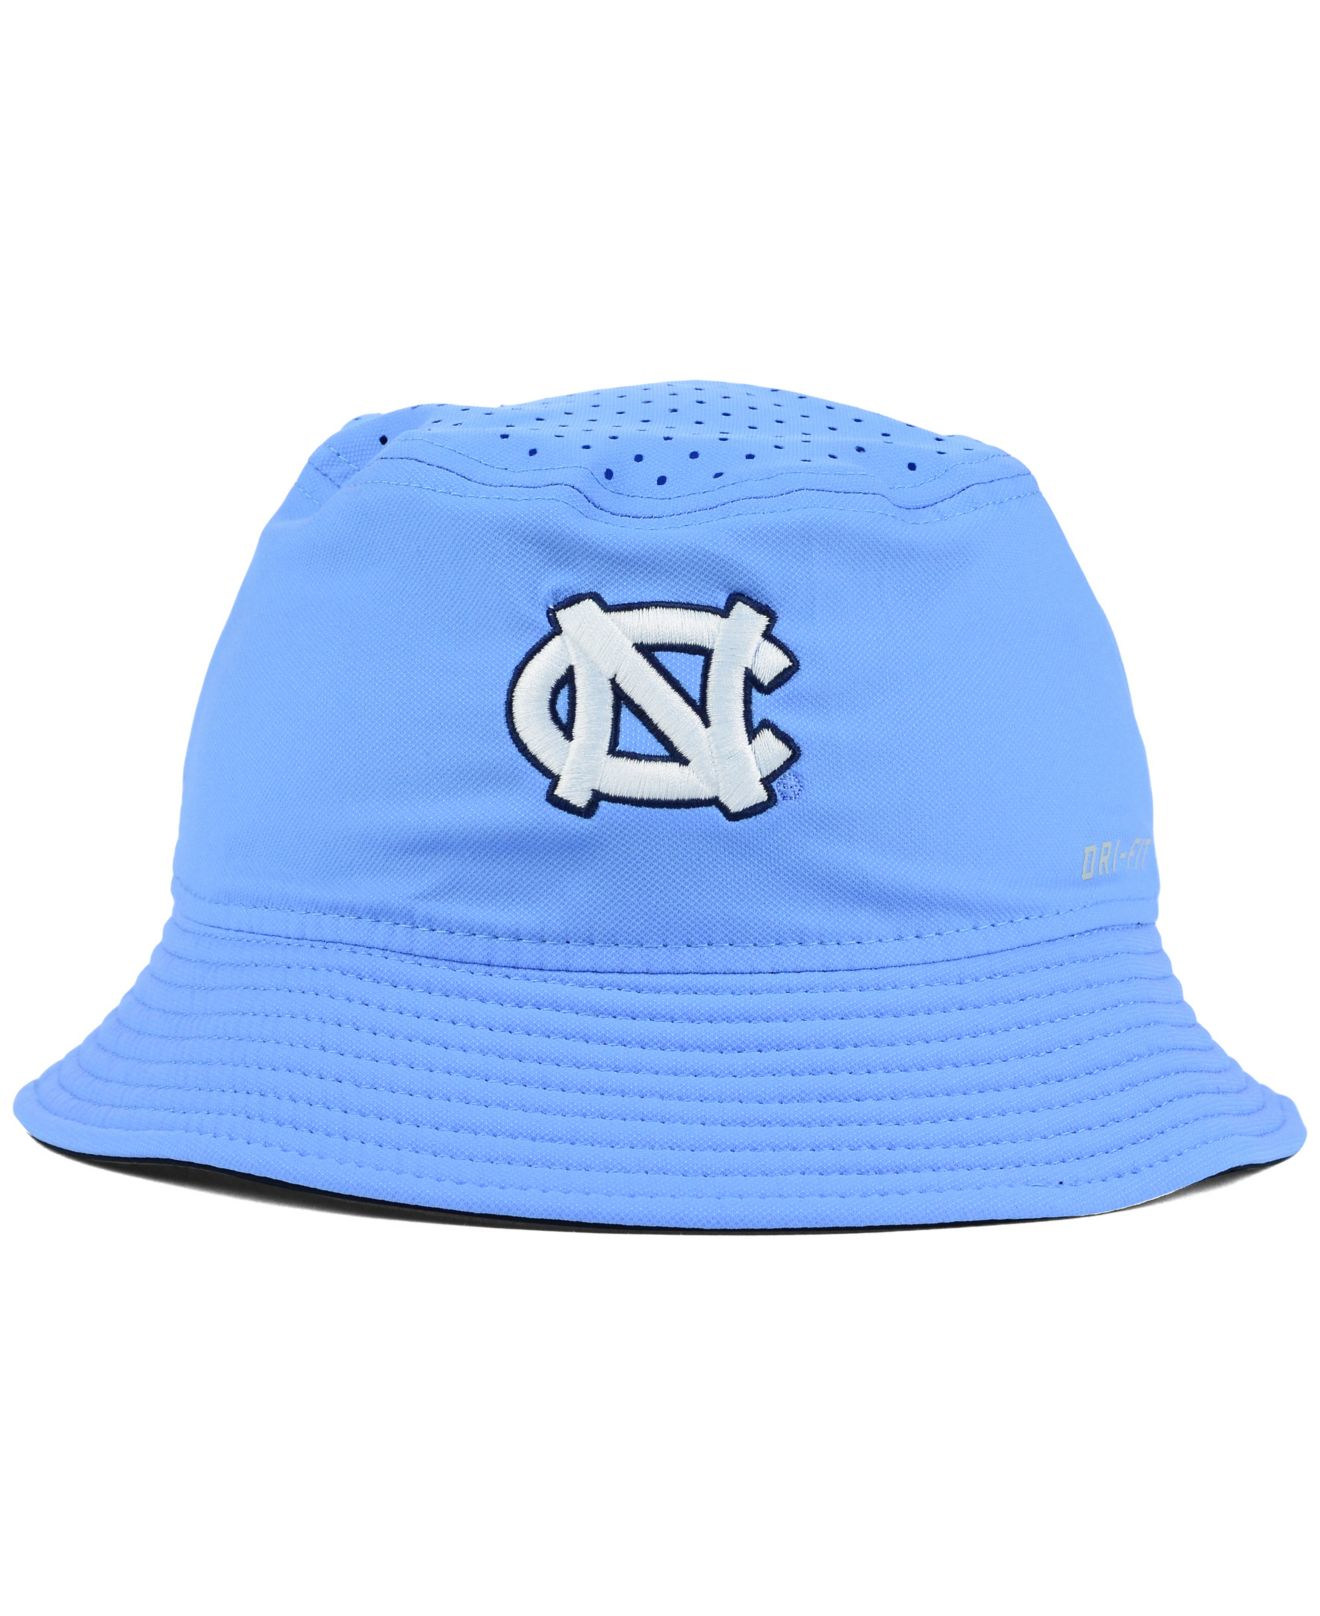 Lyst - Nike North Carolina Tar Heels Vapor Bucket Hat in Blue for Men